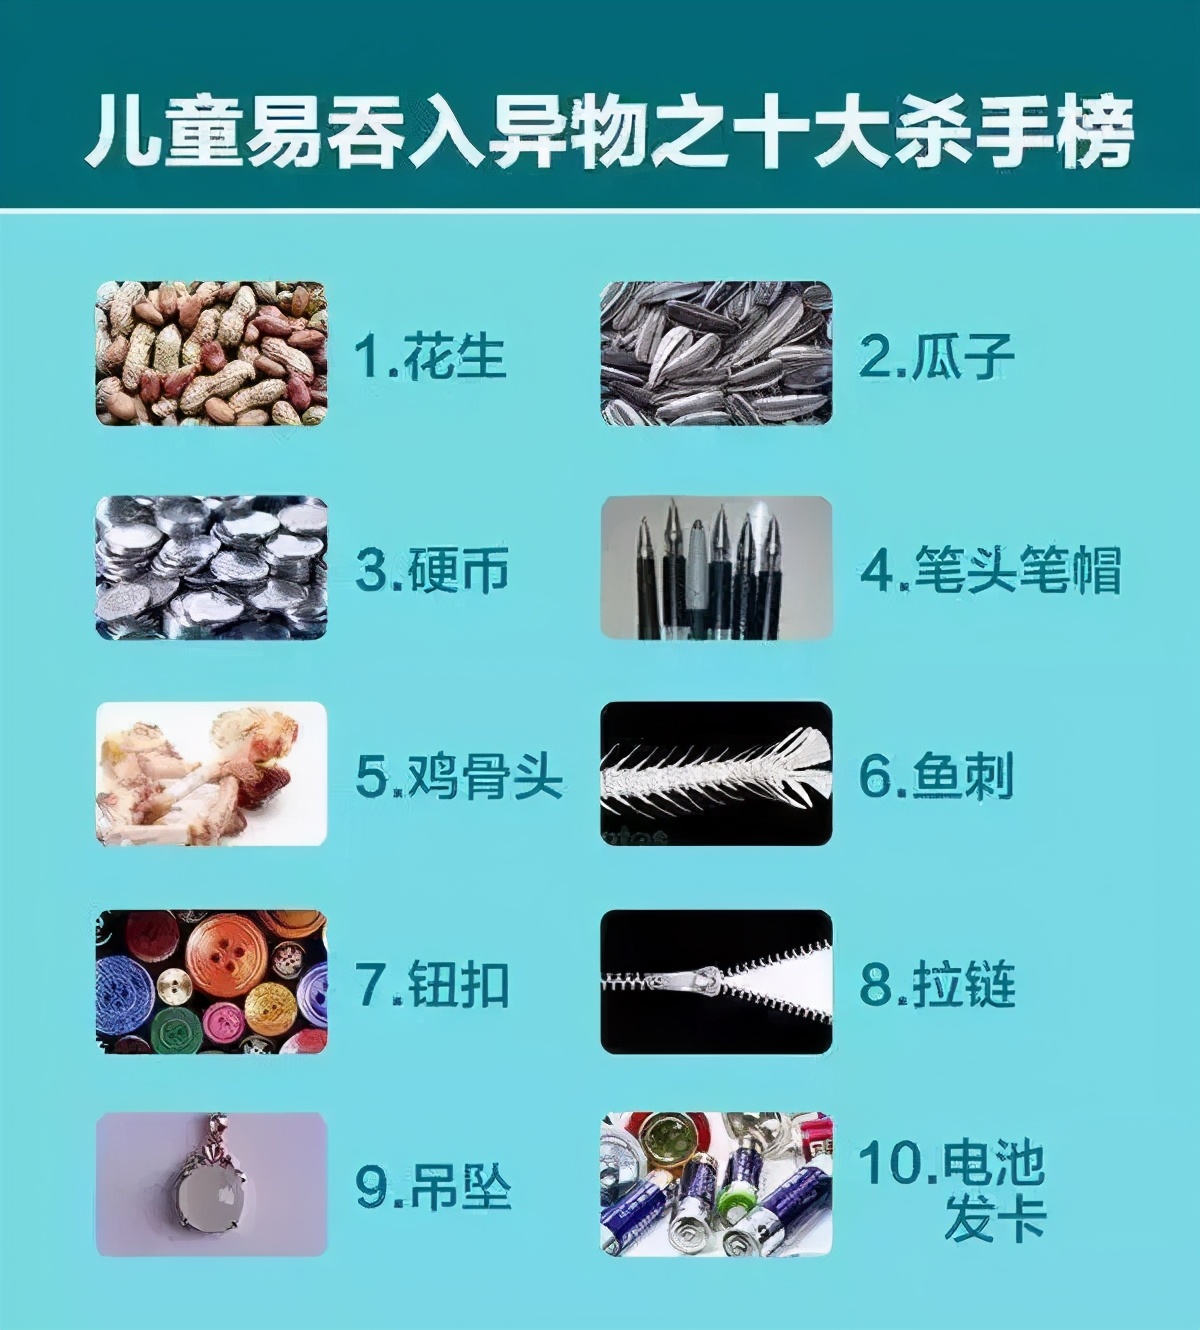 16月大患儿气管被堵！武汉大学人民医院儿科专家在支气管镜下紧急“拆弹”挽救生命